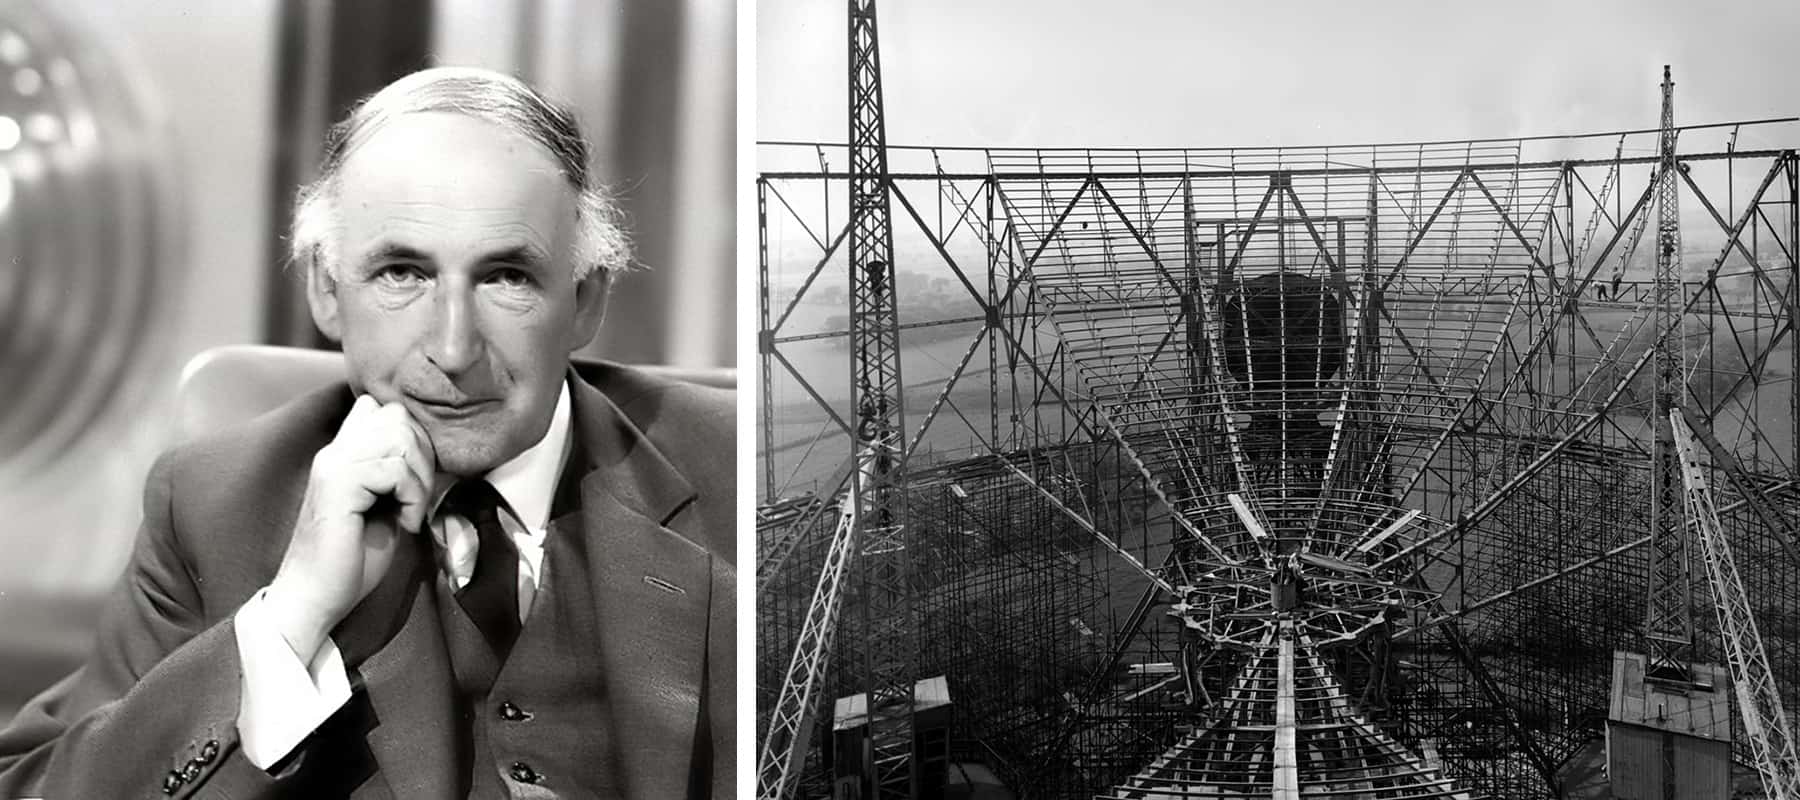 Dua foto hitam putih: seorang pria berjas dan teleskop besar sedang dibangun